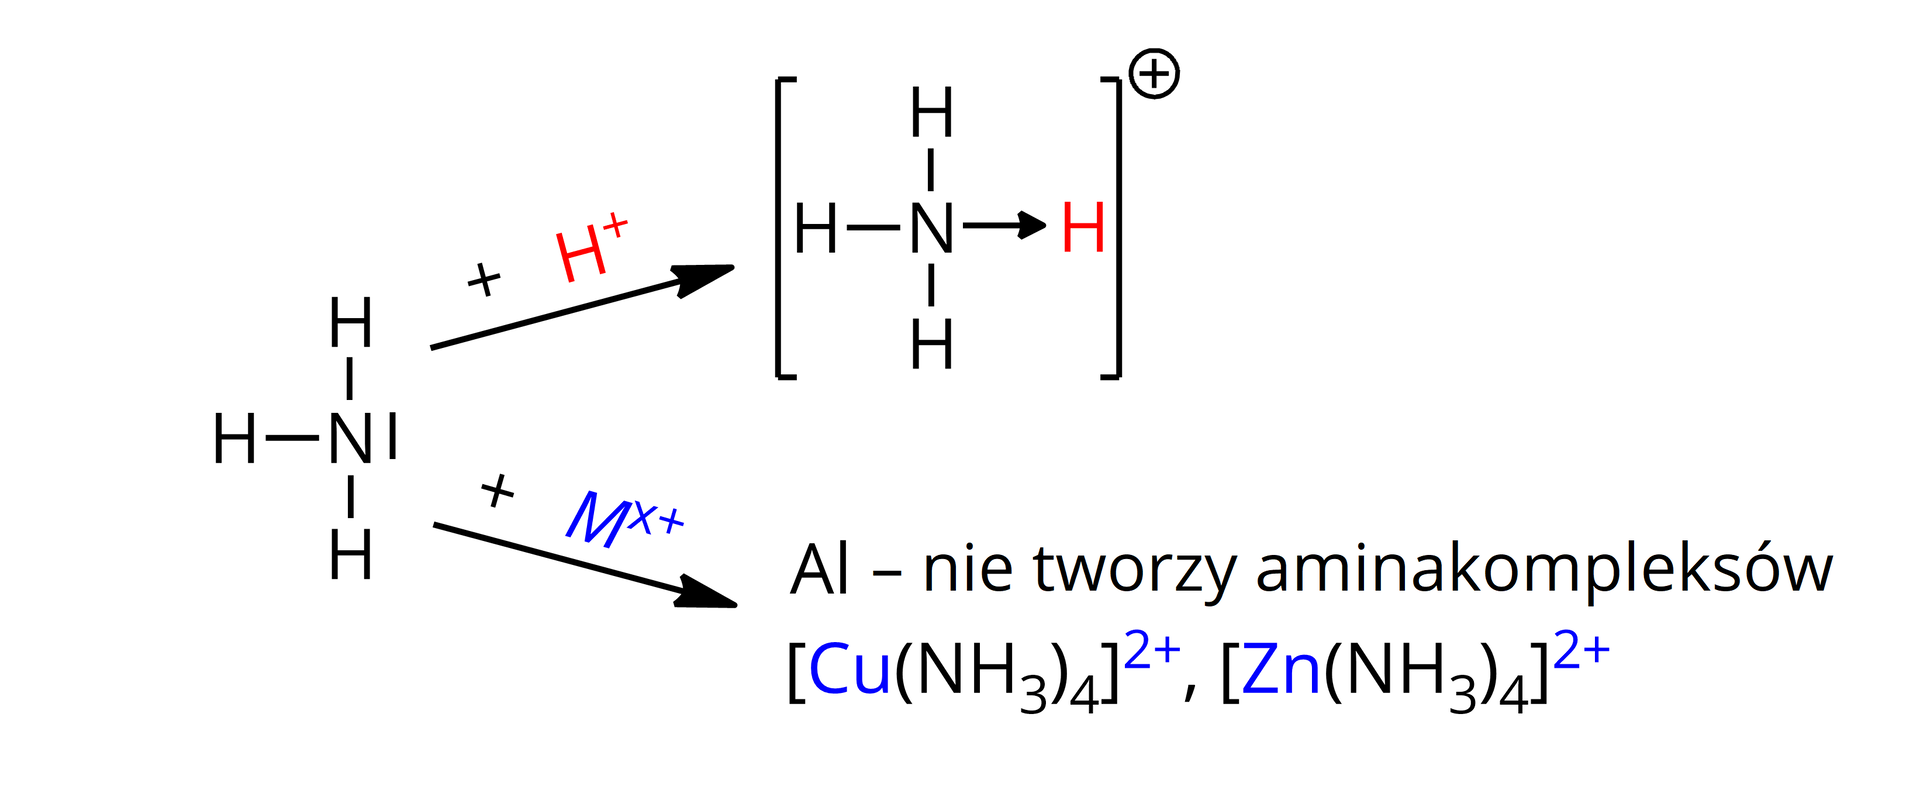 Ilustracja przedstawiająca dwie reakcje, którym ulega cząsteczka amoniaku. Wzór strukturalny amoniaku składa się z atomu azotu N połączonego za pomocą trzech wiązań pojedynczych z trzema atomami wodoru H. Atom azotu posiada zaznaczoną wolną parę elektronową w postaci kreski. Pierwsza reakcja. Od amoniaku poprowadzono strzałkę w prawo, nad którą znajduje się jon H+. Za strzałką jon amonowy przedstawiony następująco. Atom azotu N łączy się za pomocą trzech wiązań pojedynczych z trzema atomami wodoru. Oraz za pomocą wiązania koordynacyjnego z czwartym atomem wodoru. Wiązanie to reprezentuje strzałka poprowadzona od atomu azotu do atomu wodoru. Całość znajduje się w nawiasie kwadratowym. Względem niego w indeksie górnym znajduje się znak plus wskazujący ładunek jonu. Druga reakcja. Od amoniaku poprowadzono drugą strzałkę w prawo, nad którą znajduje się kation metalu Mx+. Za strzałką zapis glin Al nie tworzy aminakompleksów. Poniżej przykładowe kompleksy CuNH342+ oraz &lt;math aria‑label="nawias kwadratowy Zet n nawias N H indeks dolny trzy koniec indeksu zamknięcie nawiasu indeks dolny cztery koniec indeksu zamknięcie nawiasu kwadratowego indeks górny dwa plus koniec indeksu"&gt;ZnNH342+.